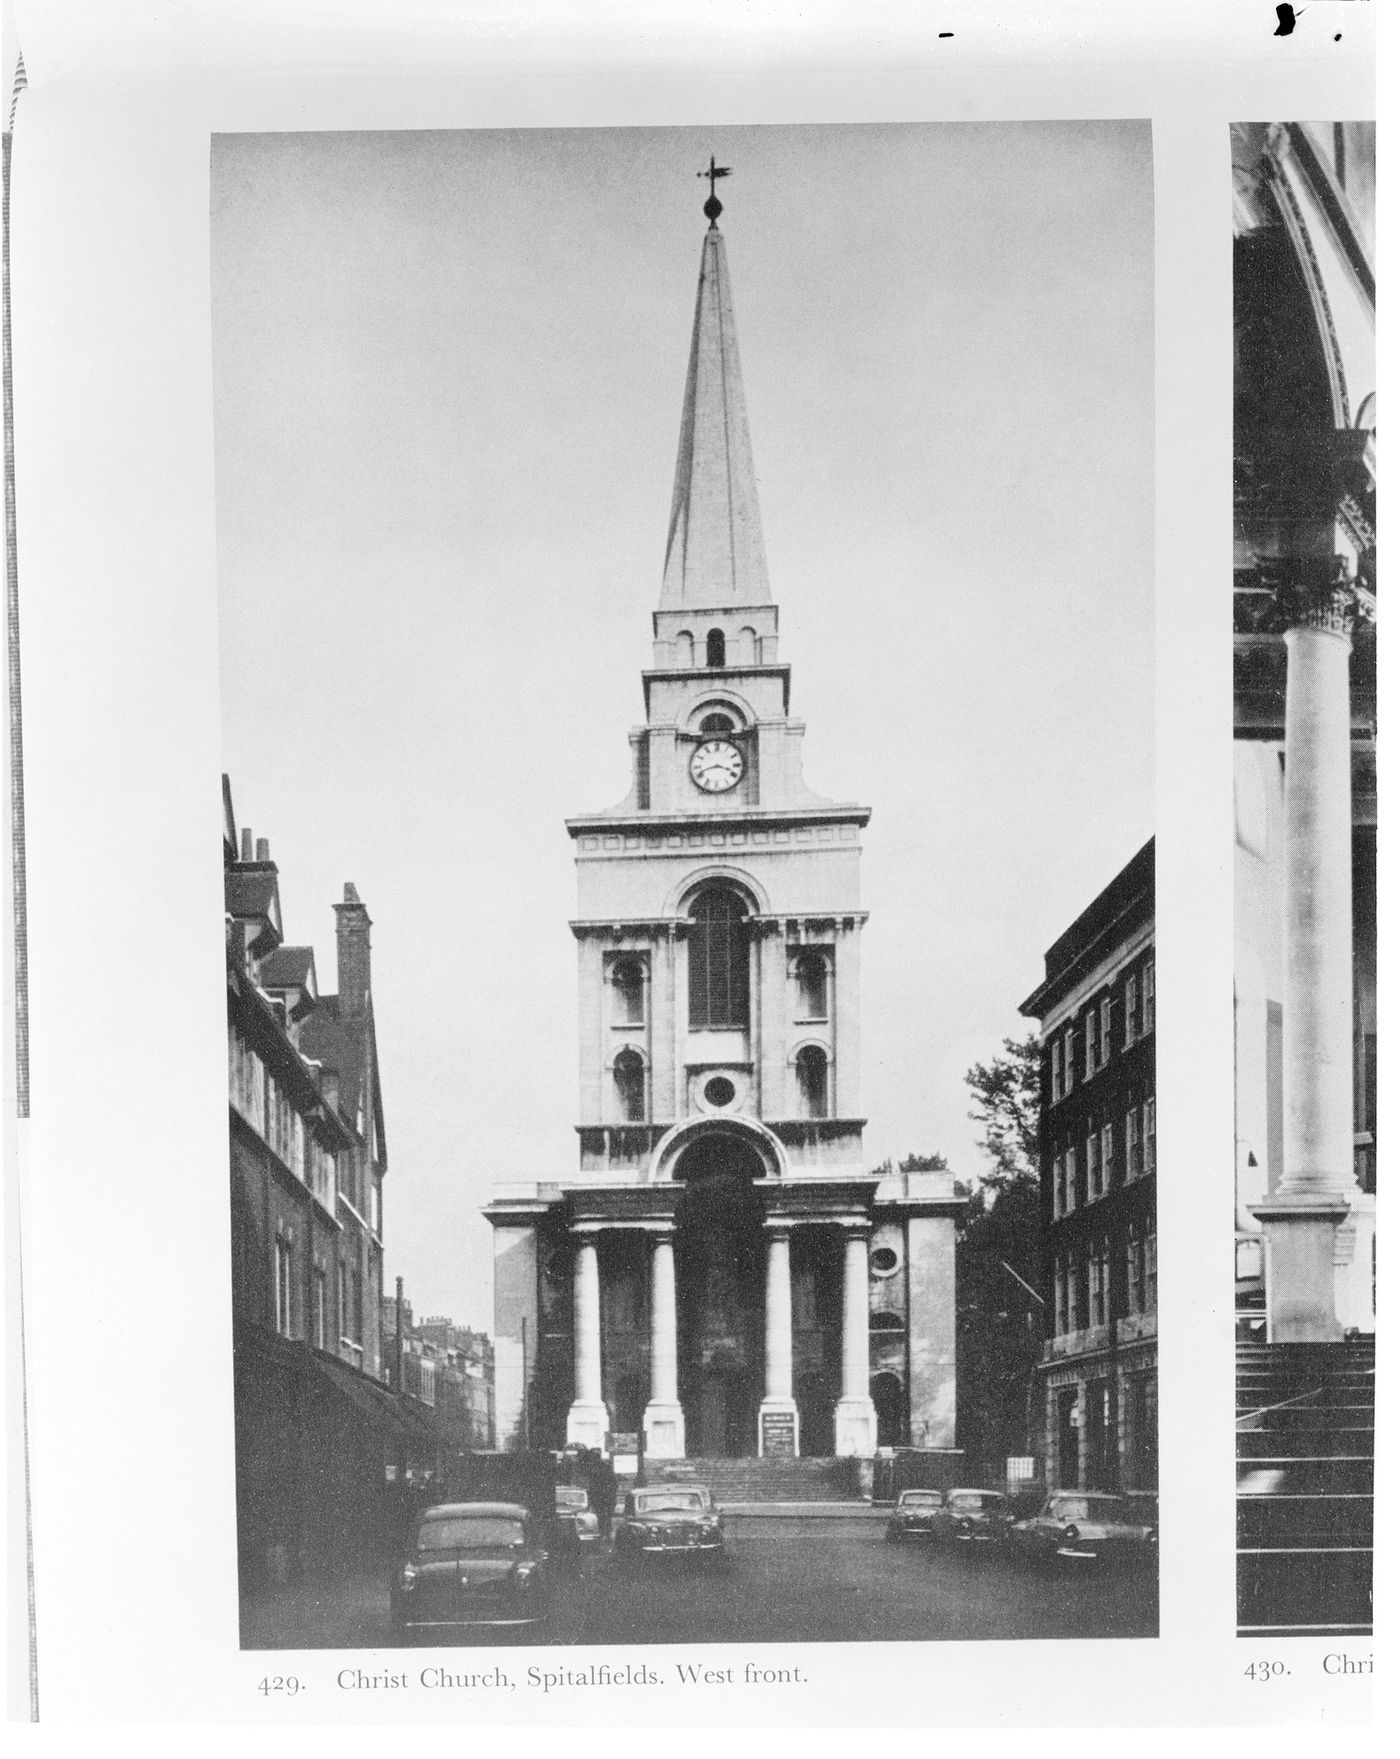 Christchurch, Spitalfields, 1714